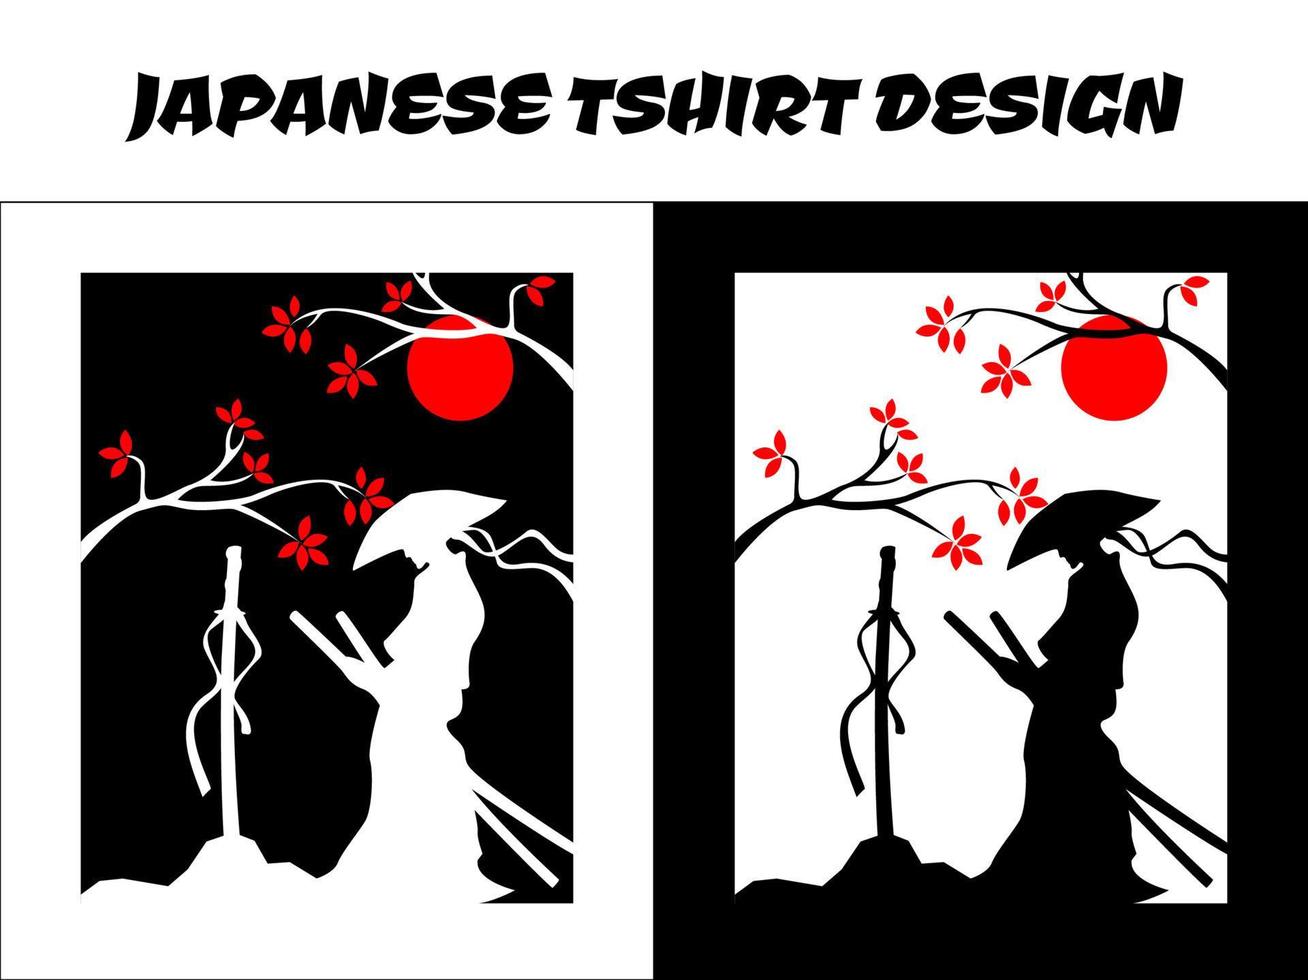 samouraï masculin, vecteur de samouraï de silhouette au japon pour le concept de t-shirt de conception, samouraï de silhouette, conception de t-shirt japonais, illustration vectorielle de samouraï